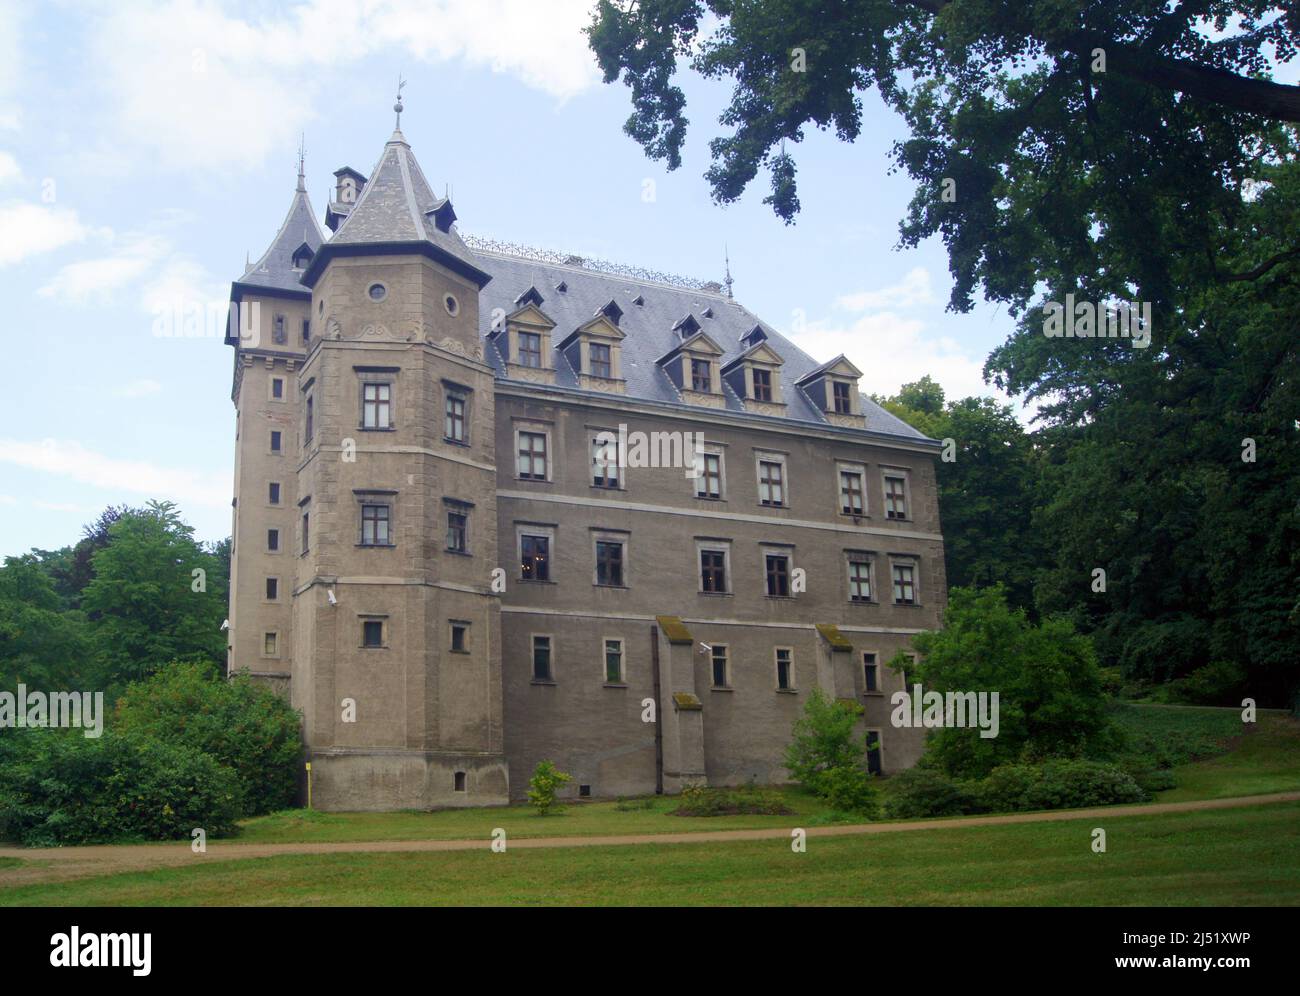 Poland.Gołuchów uno dei castelli, che sono anche noti come i castelli polacchi sulla Loira '', perché sono completamente modellati su di essi. Foto Stock